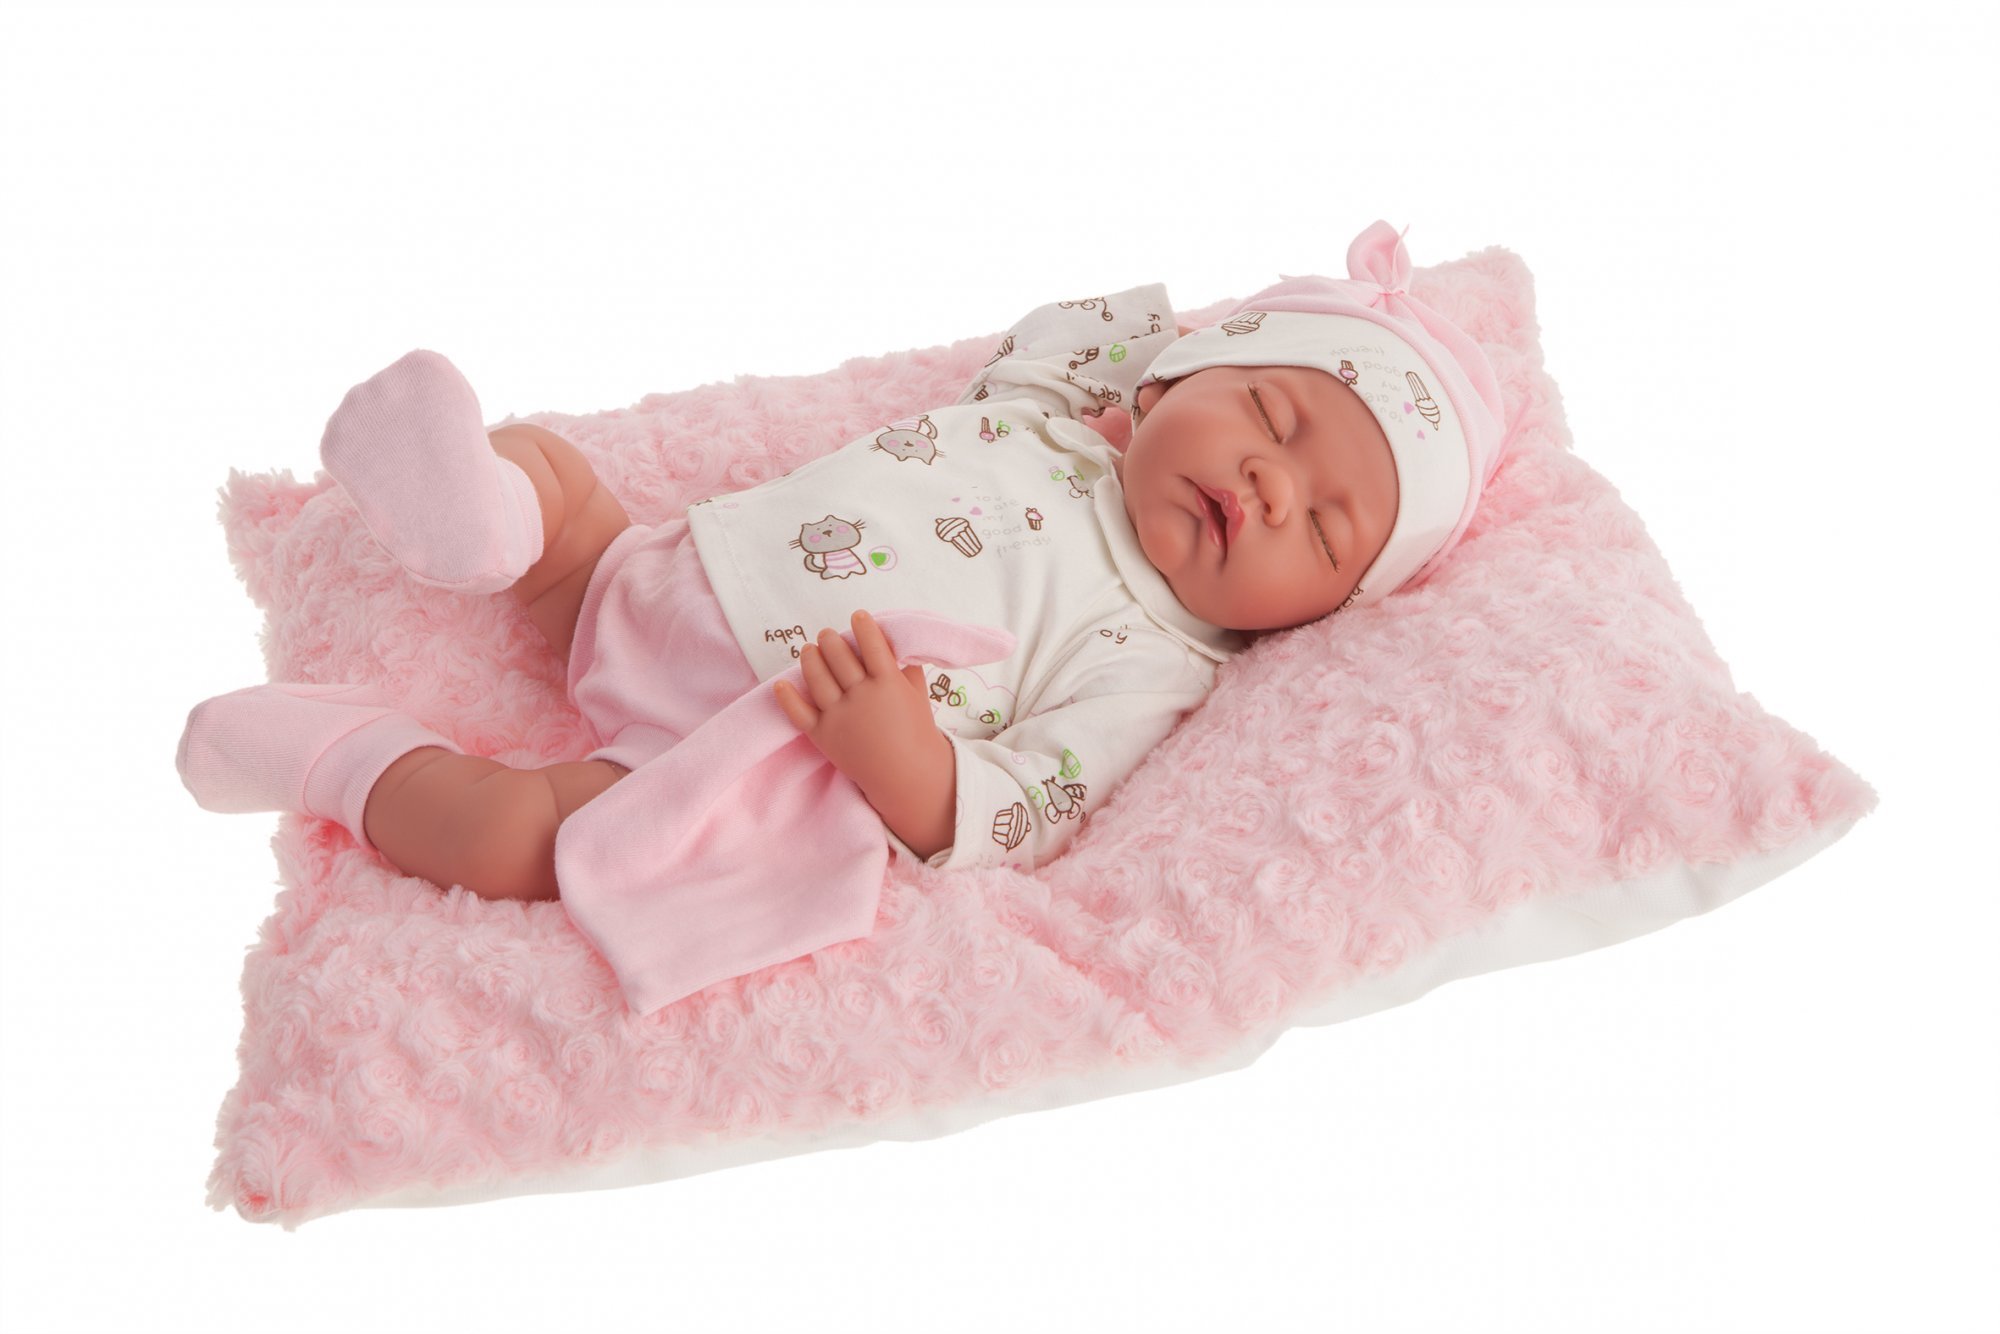 Antonio Juan 3348 LUNA - spící realistická panenka miminko s měkkým látkovým tělem - 42 cm